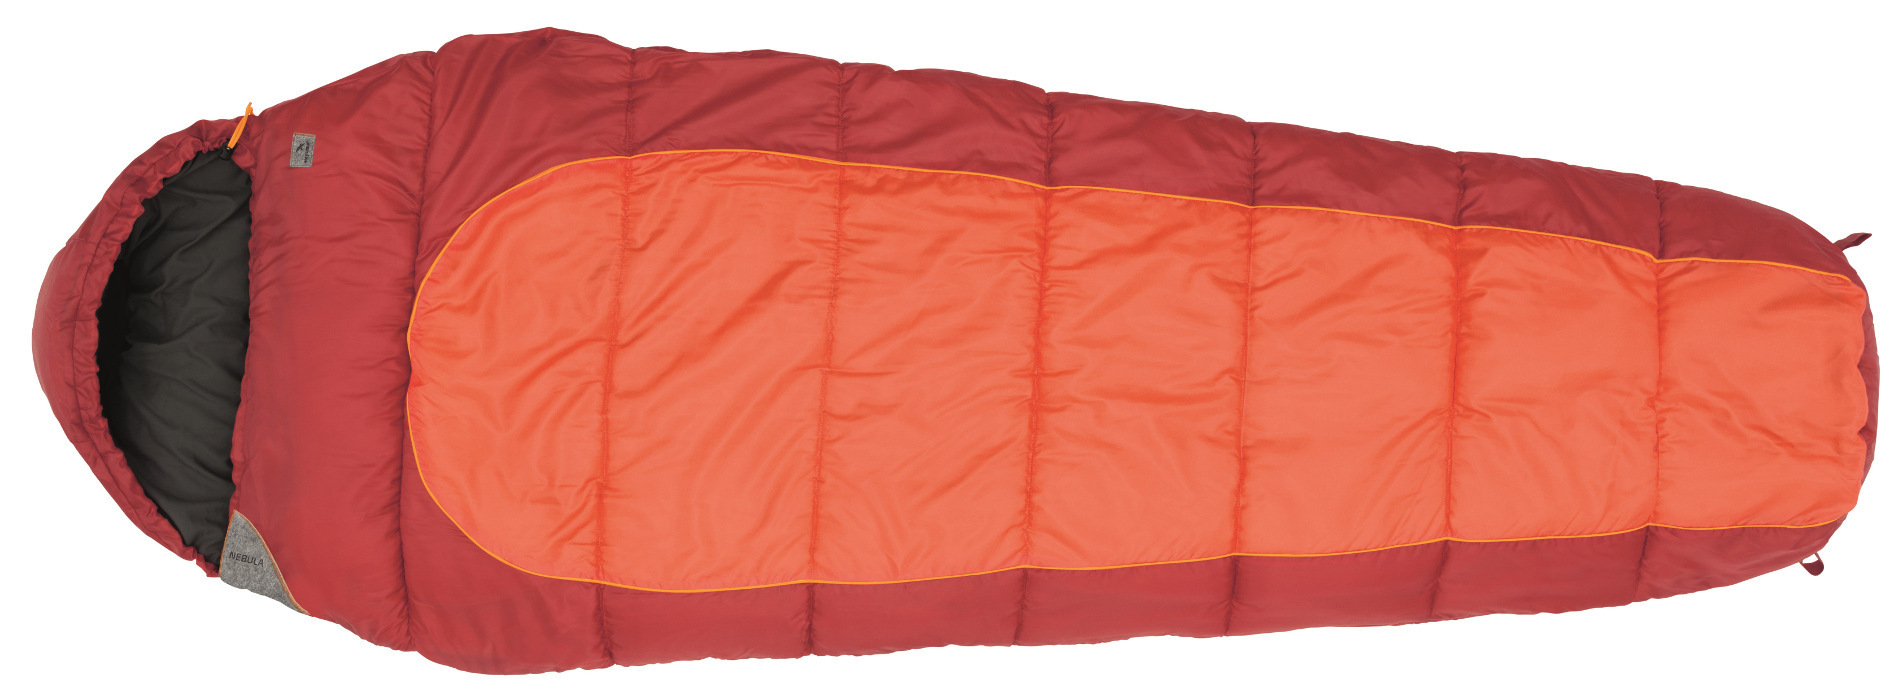 фото Спальный мешок easy camp nebula red/orange, правый